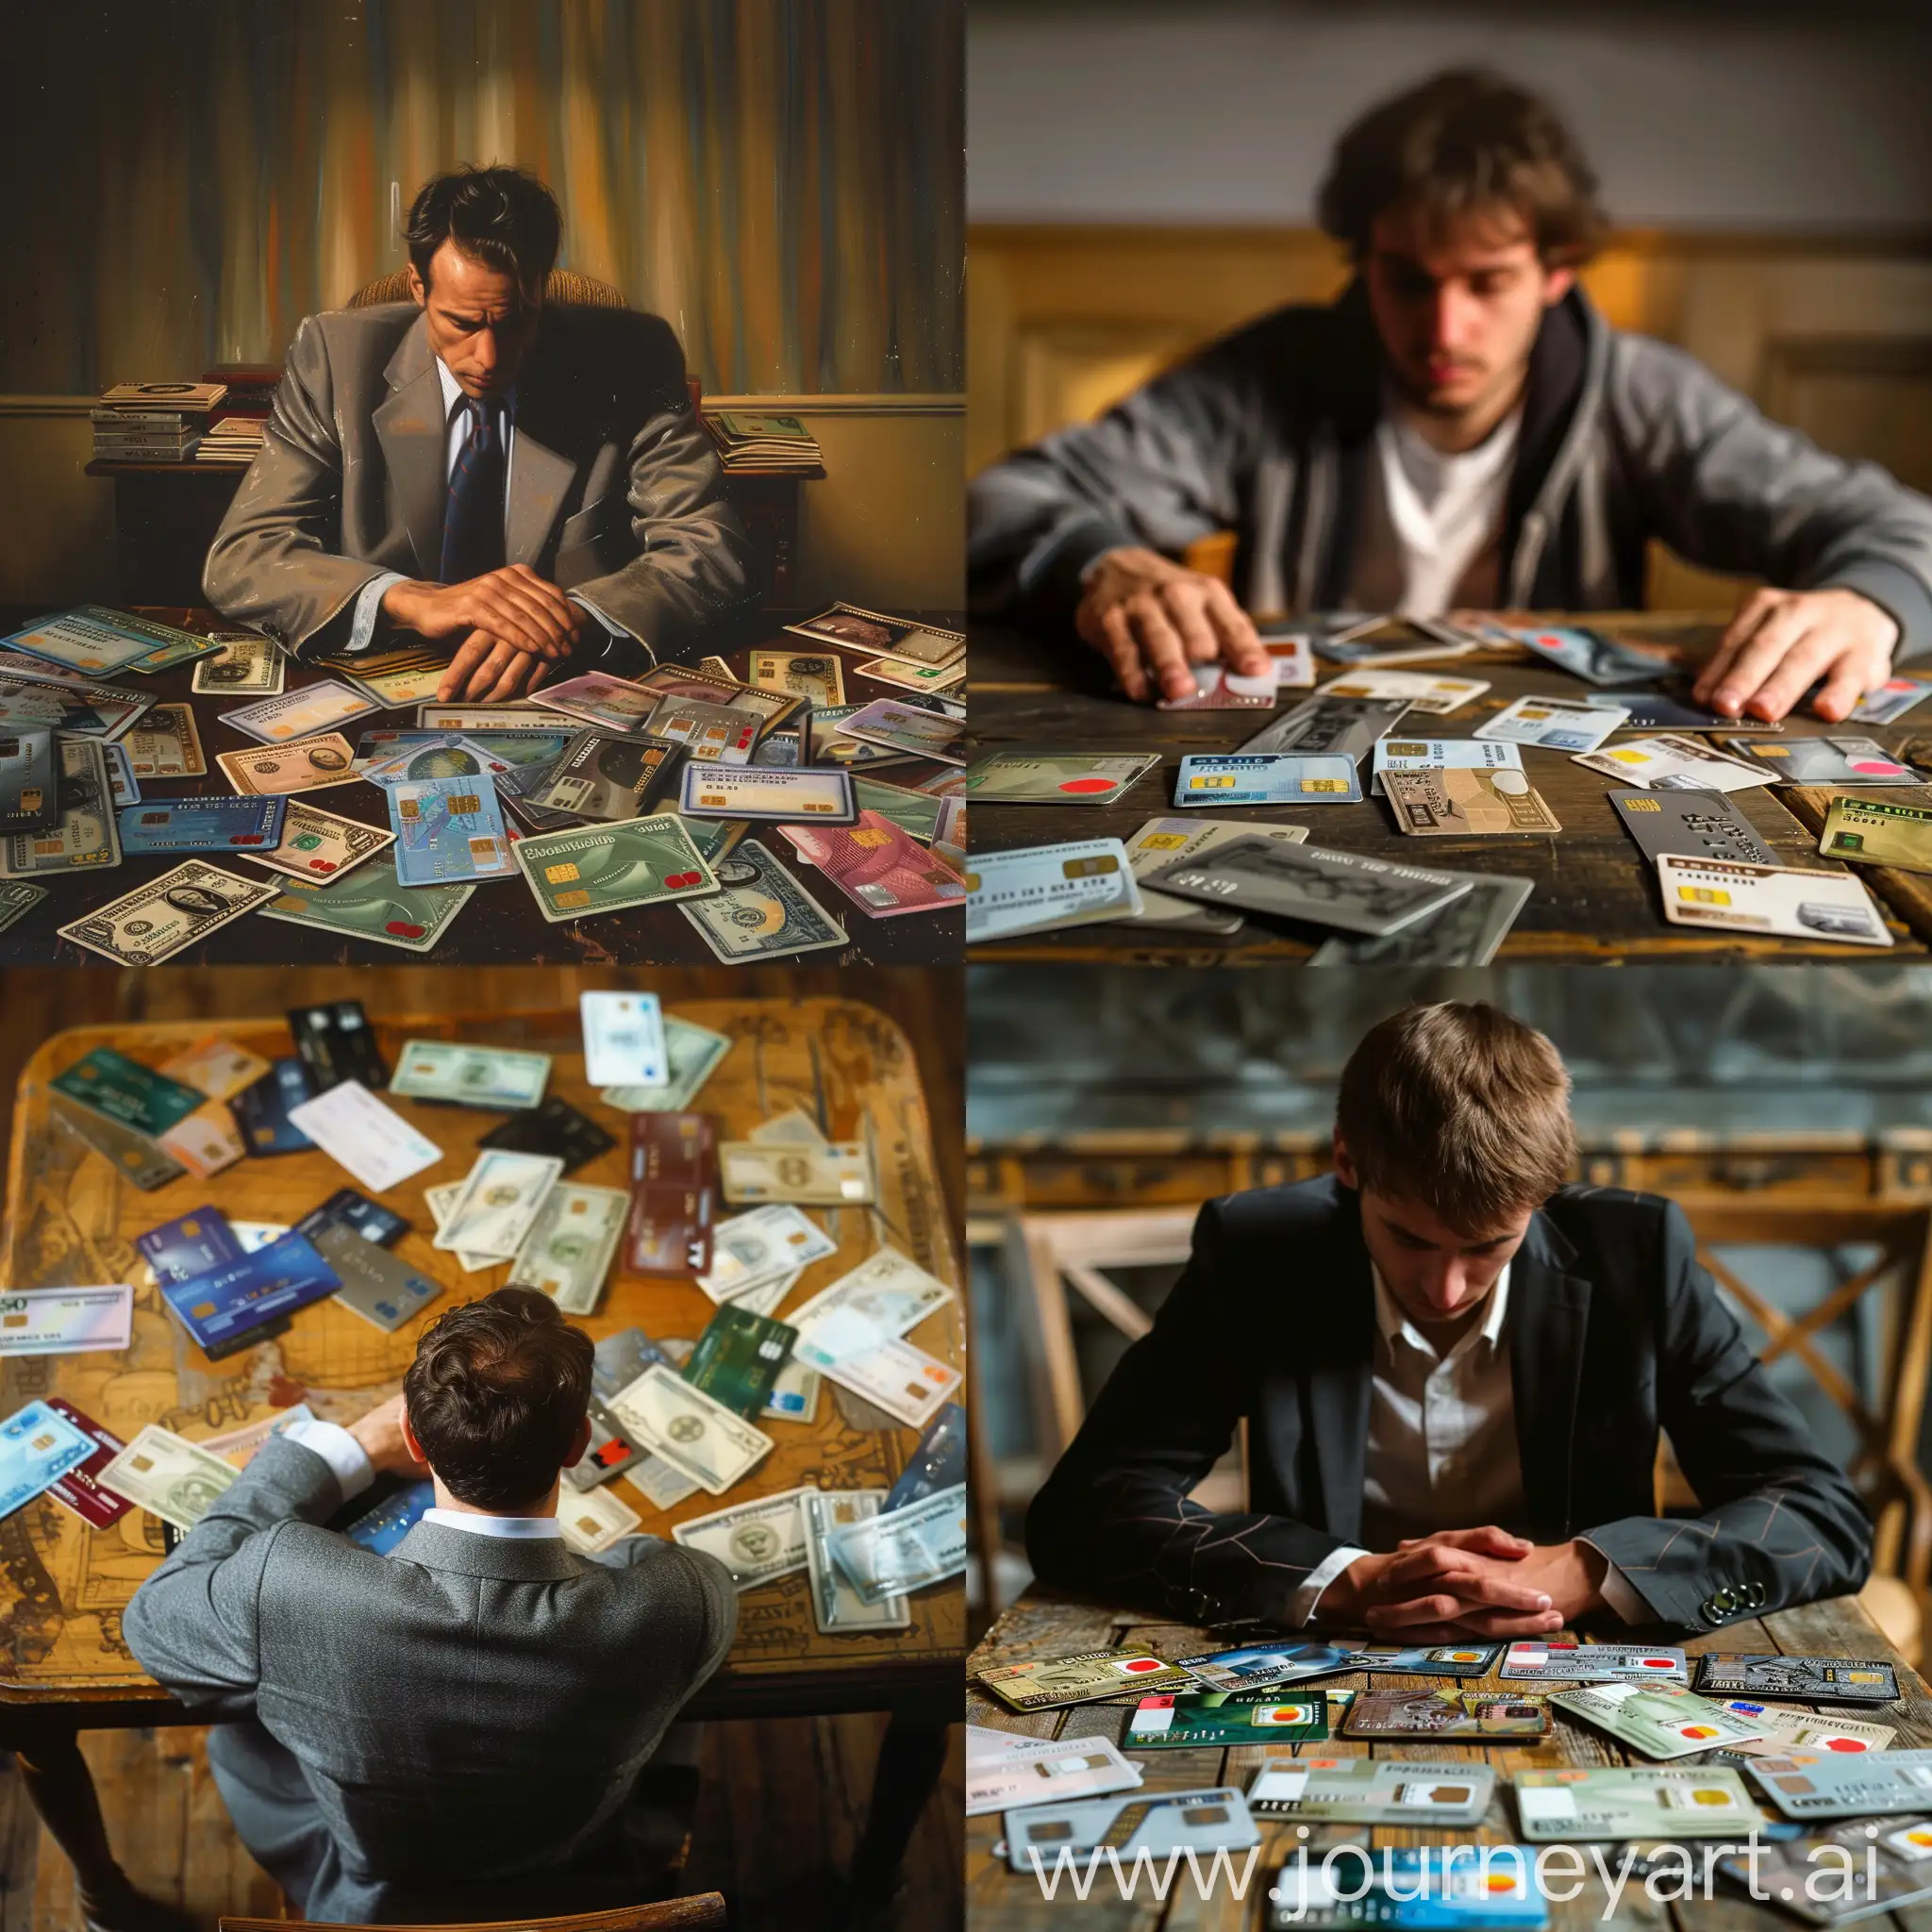 изобрази человека сидящего за столом на котором лежит много различных банковских карточек